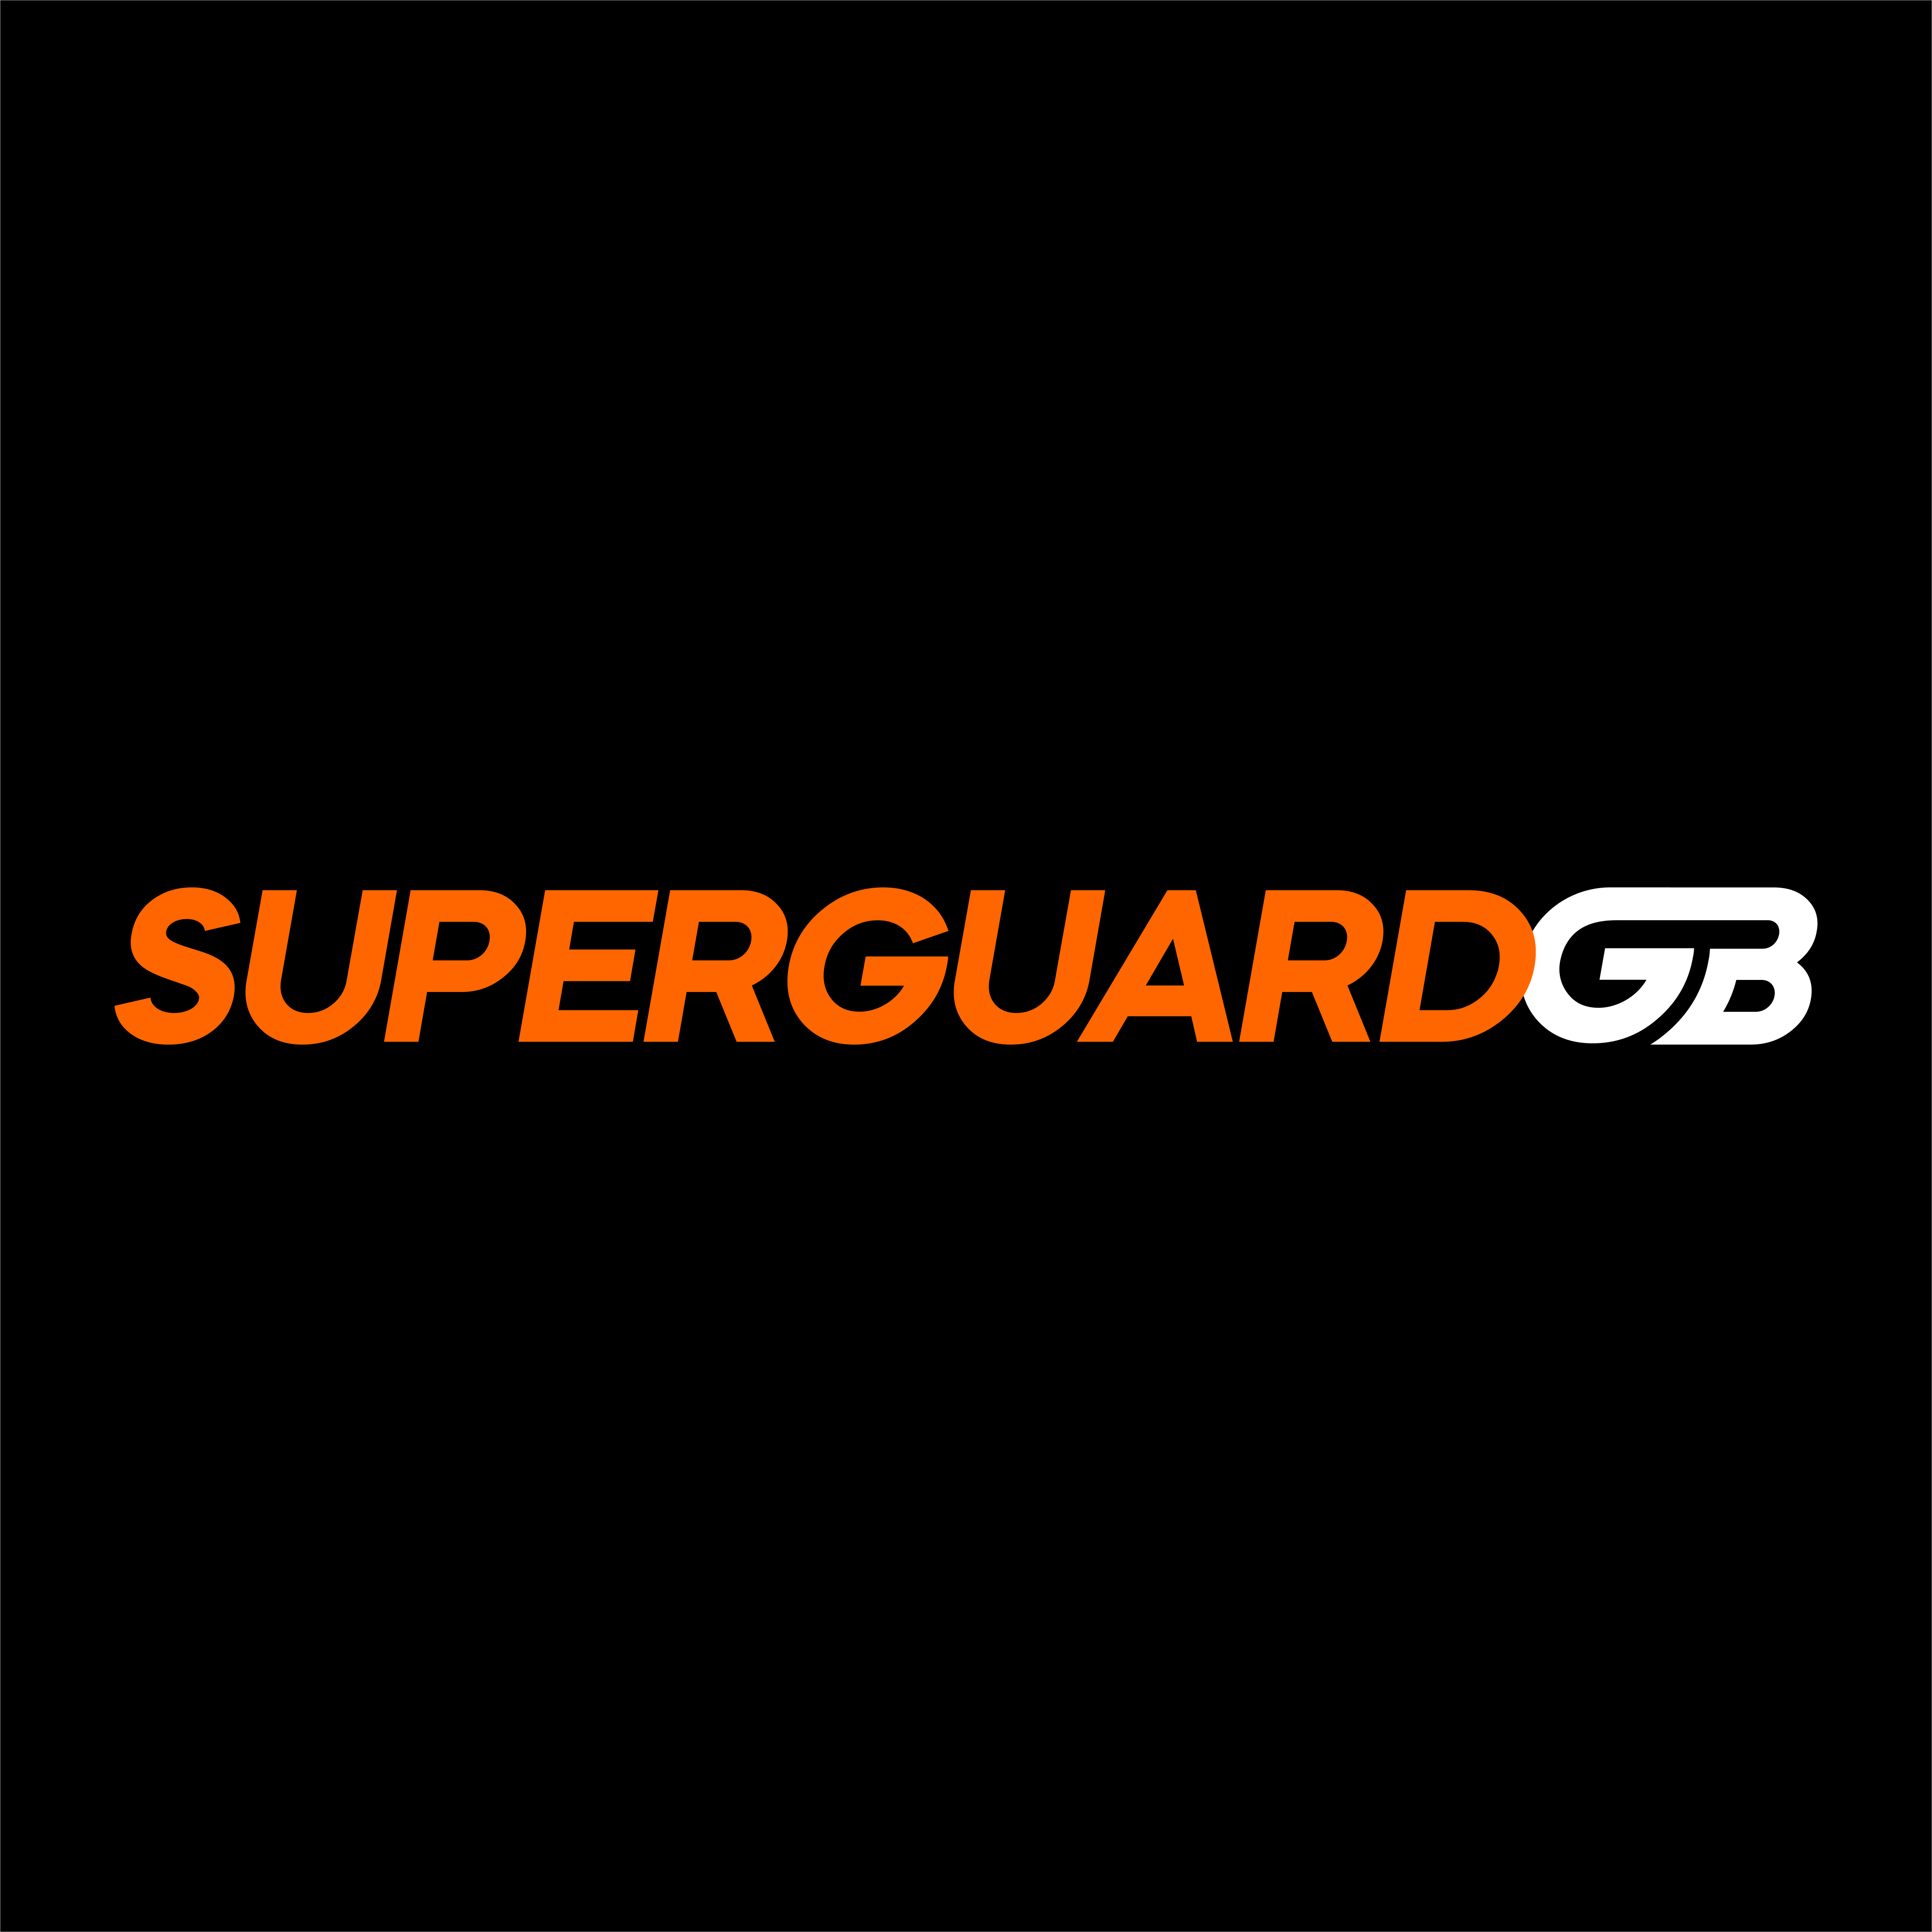 SuperGuard GB